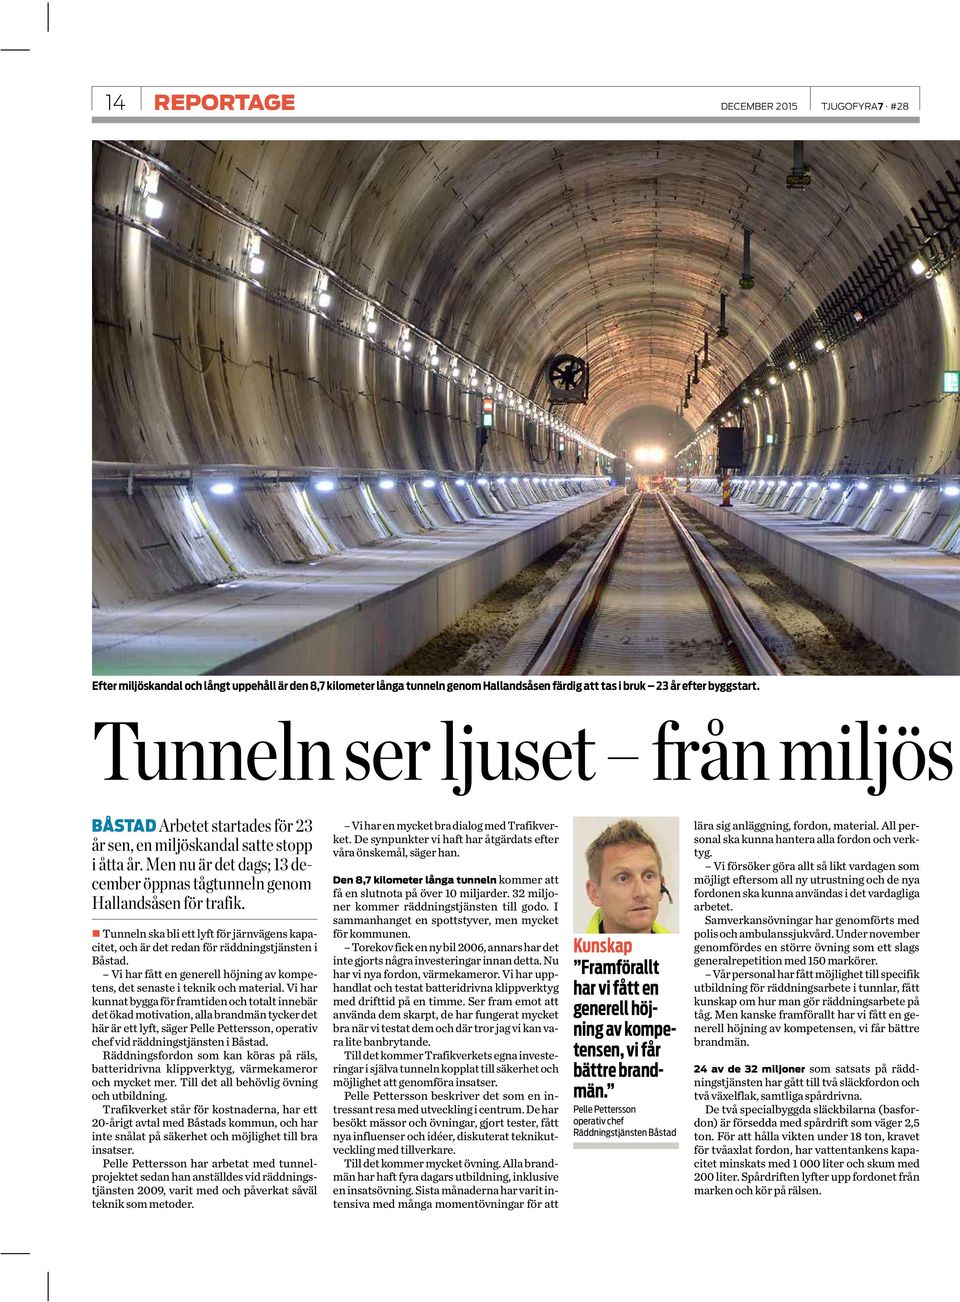 Tunneln ska bli ett lyft för järnvägens kapacitet, och är det redan för räddningstjänsten i Båstad. Vi har fått en generell höjning av kompetens, det senaste i teknik och material.